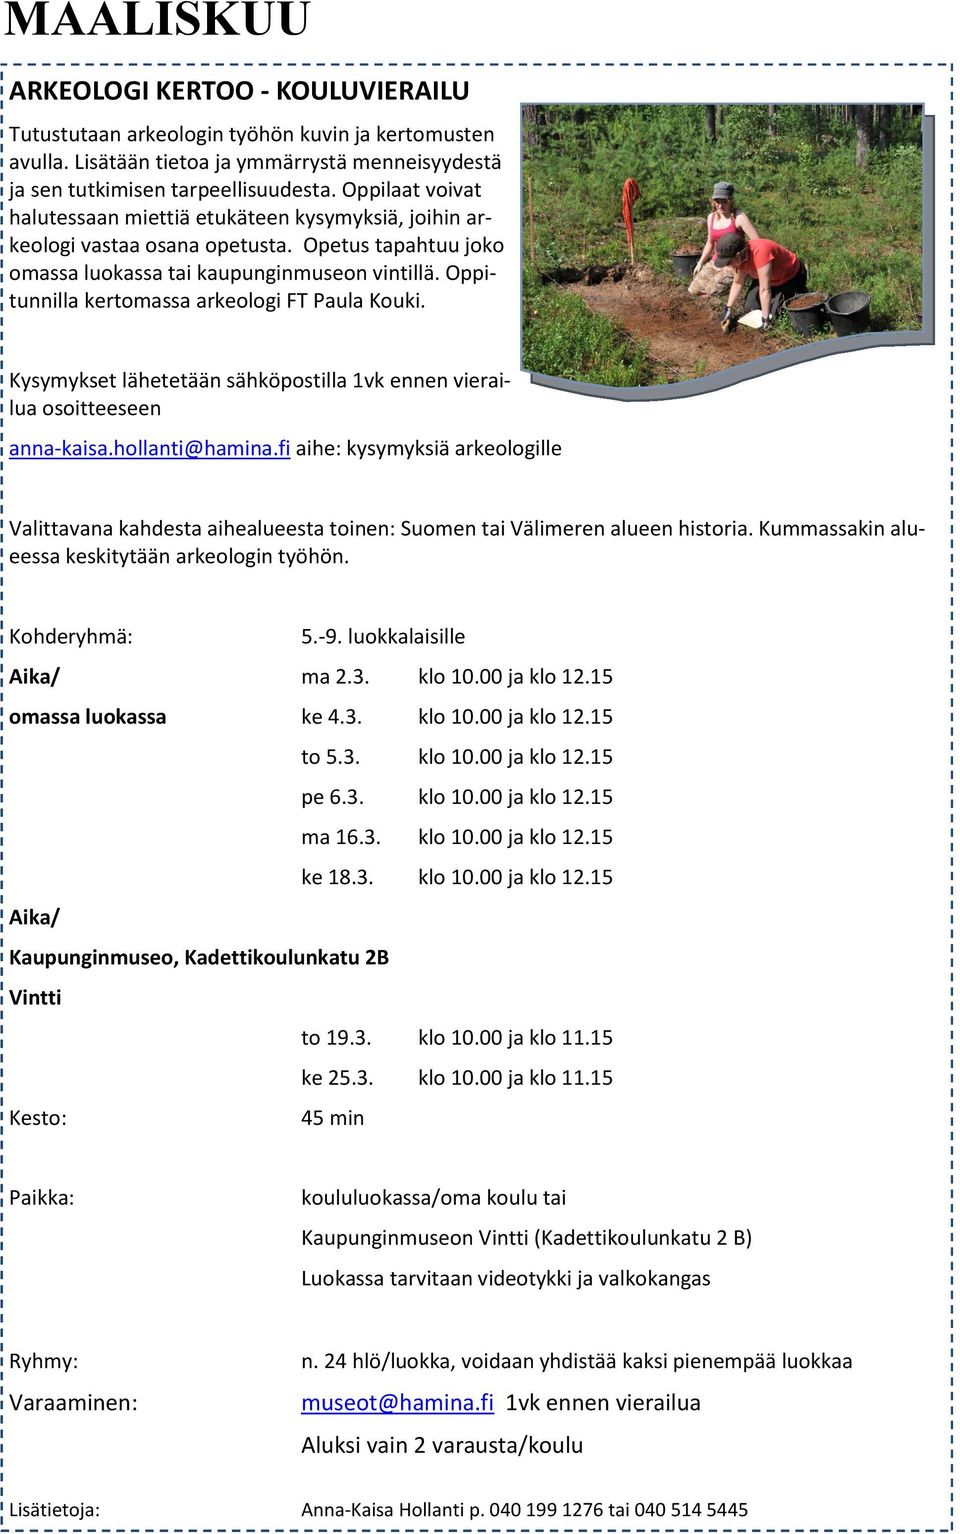 Oppitunnilla kertomassa arkeologi FT Paula Kouki. Kysymykset lähetetään sähköpostilla 1vk ennen vierailua osoitteeseen anna-kaisa.hollanti@hamina.